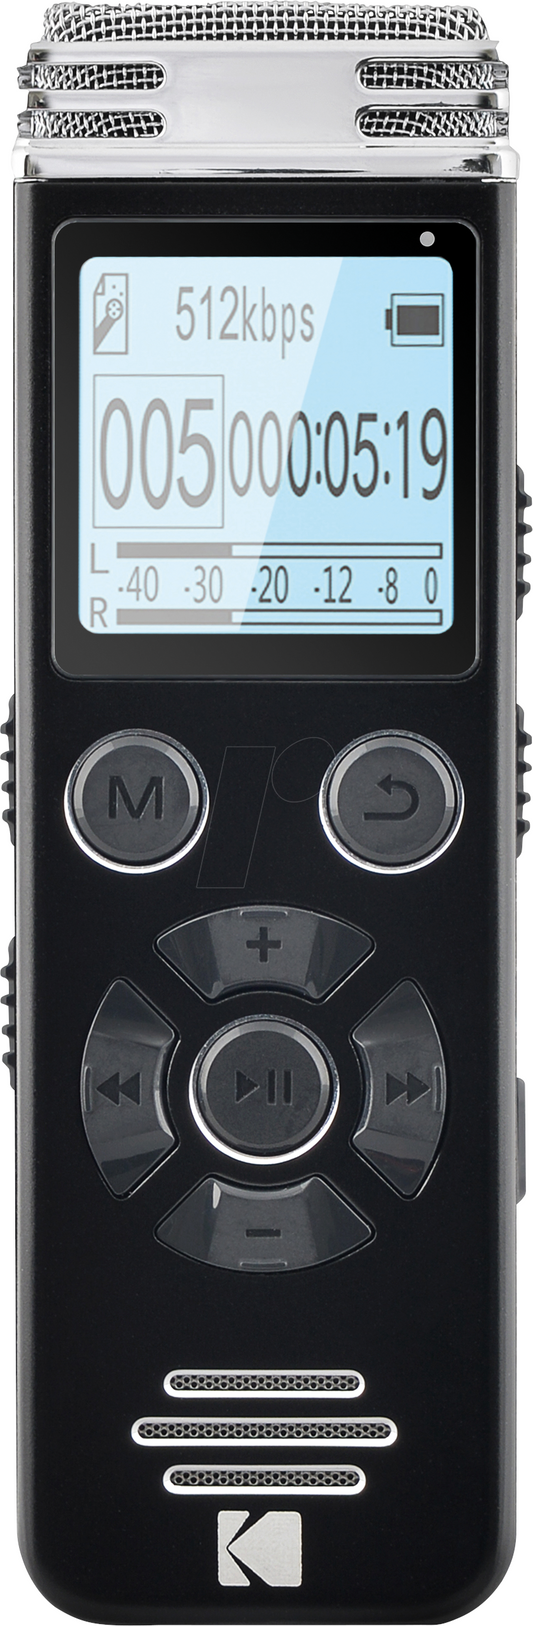 Digital Dictaphone for Stereo Recording Kodak VRC450, 8GB Memory